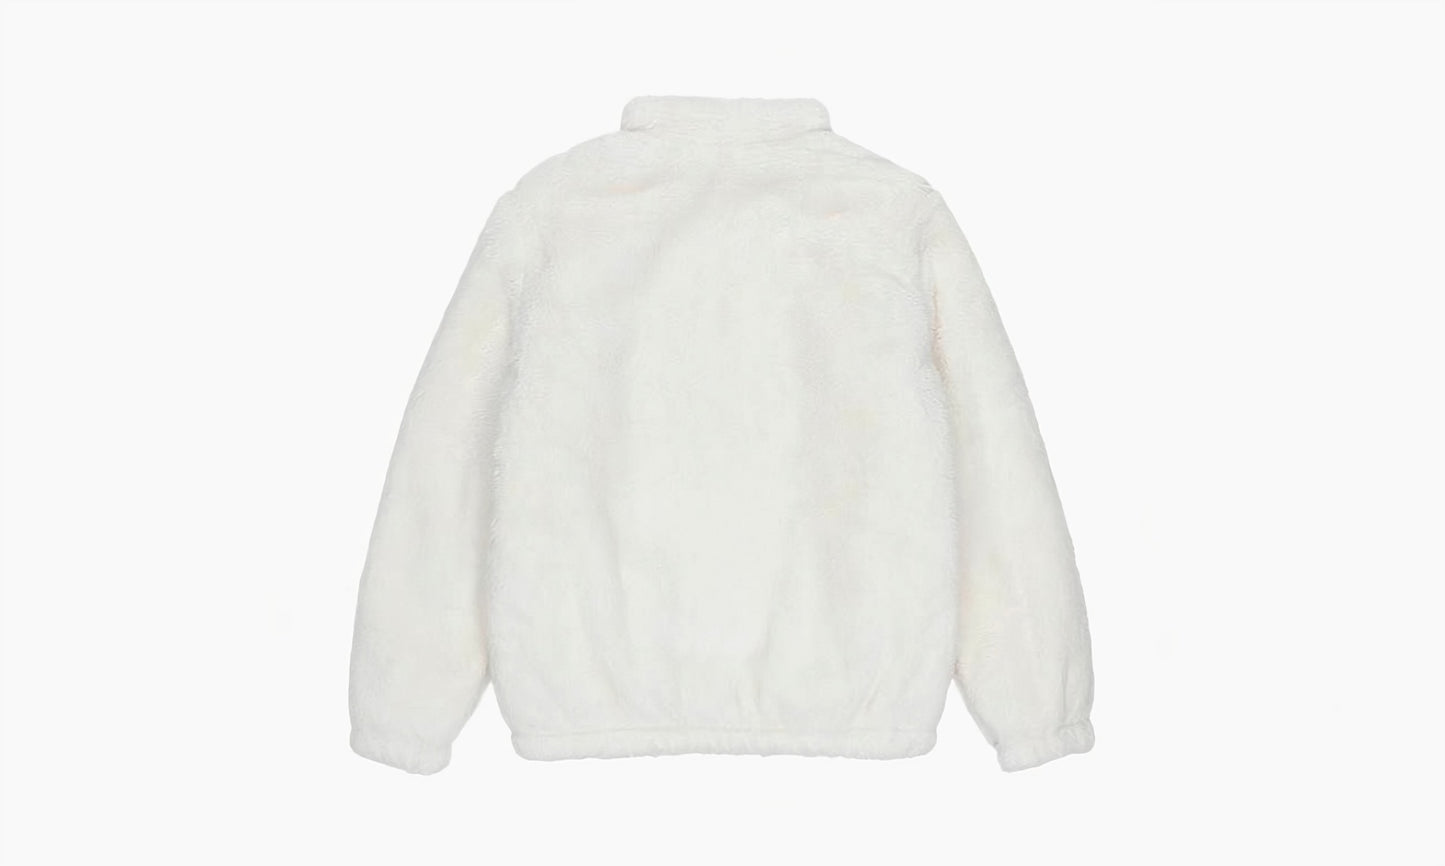 Nike Swoosh Fleece Jacket “White” - CU6559 238 | Grailshop